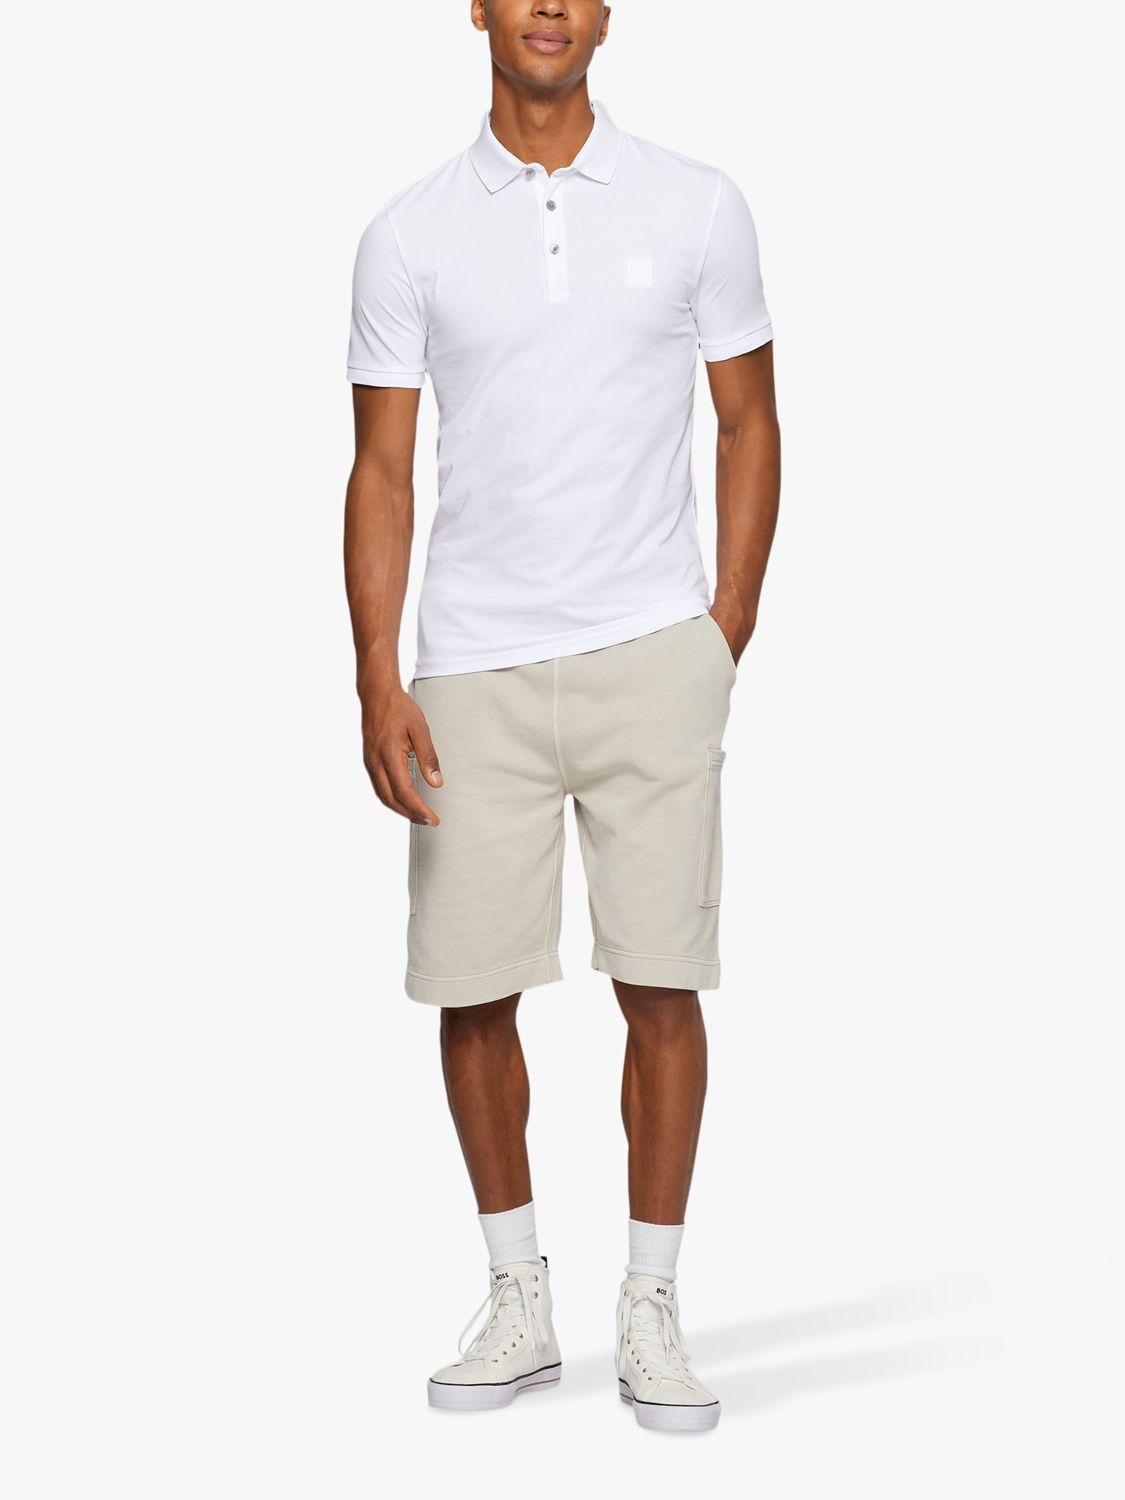 BOSS Passenger Short Sleeve Polo Shirt, White at John Lewis & Partners